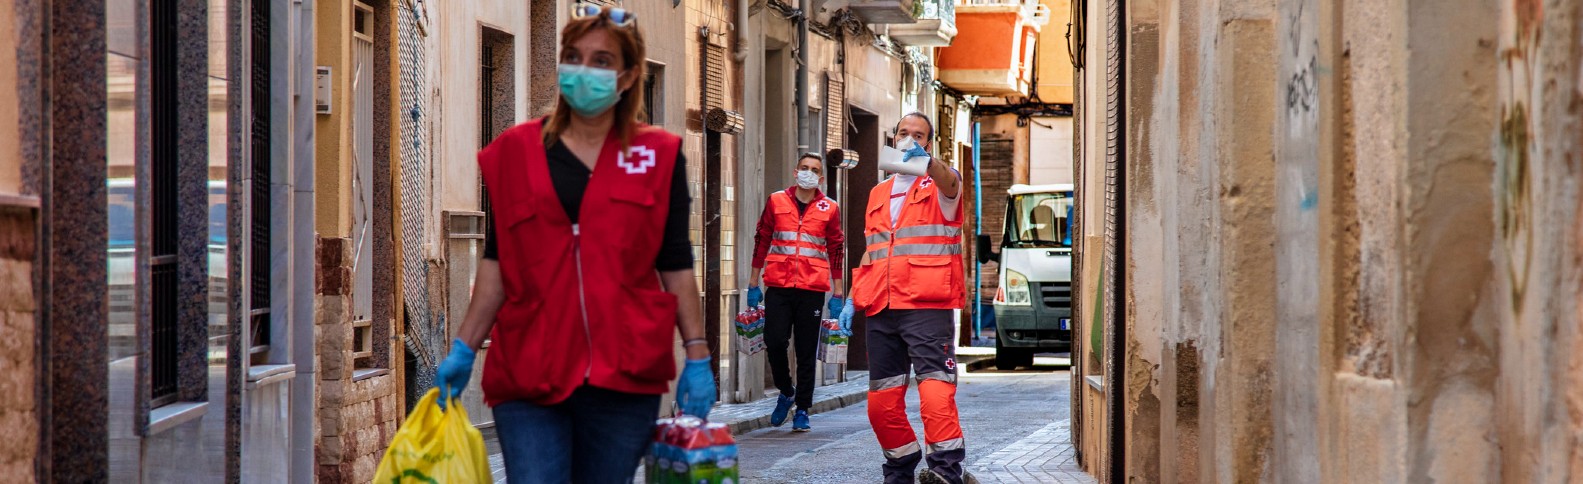 Tres años después del inicio de la pandemia la mayoría de personas que piden ayuda a Cruz Roja son mujeres